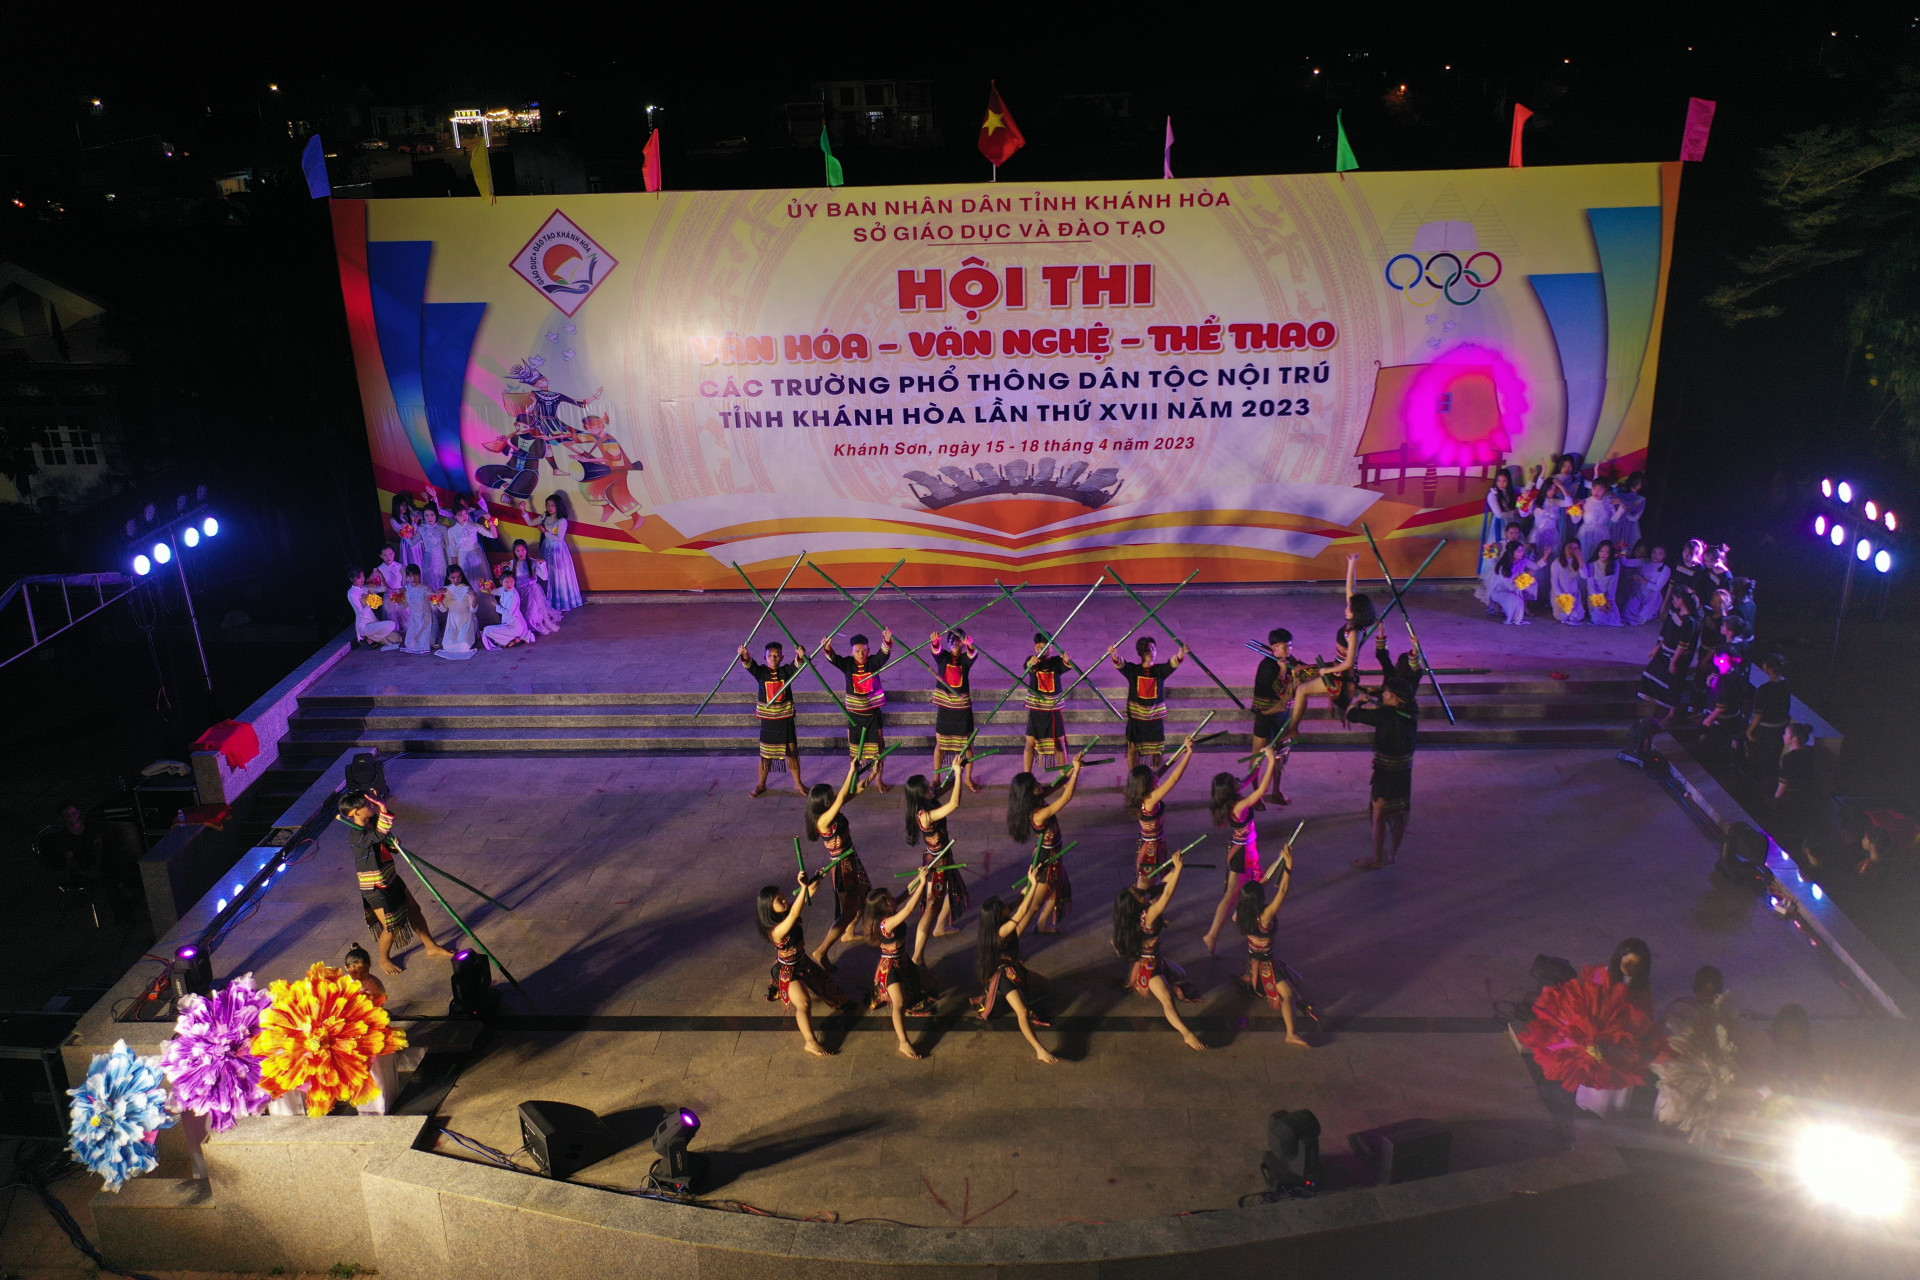 Lễ khai mạc Hội thi văn hóa, văn nghệ, thể thao các trường phổ thông dân tộc nội trú tỉnh Khánh Hòa năm 2023